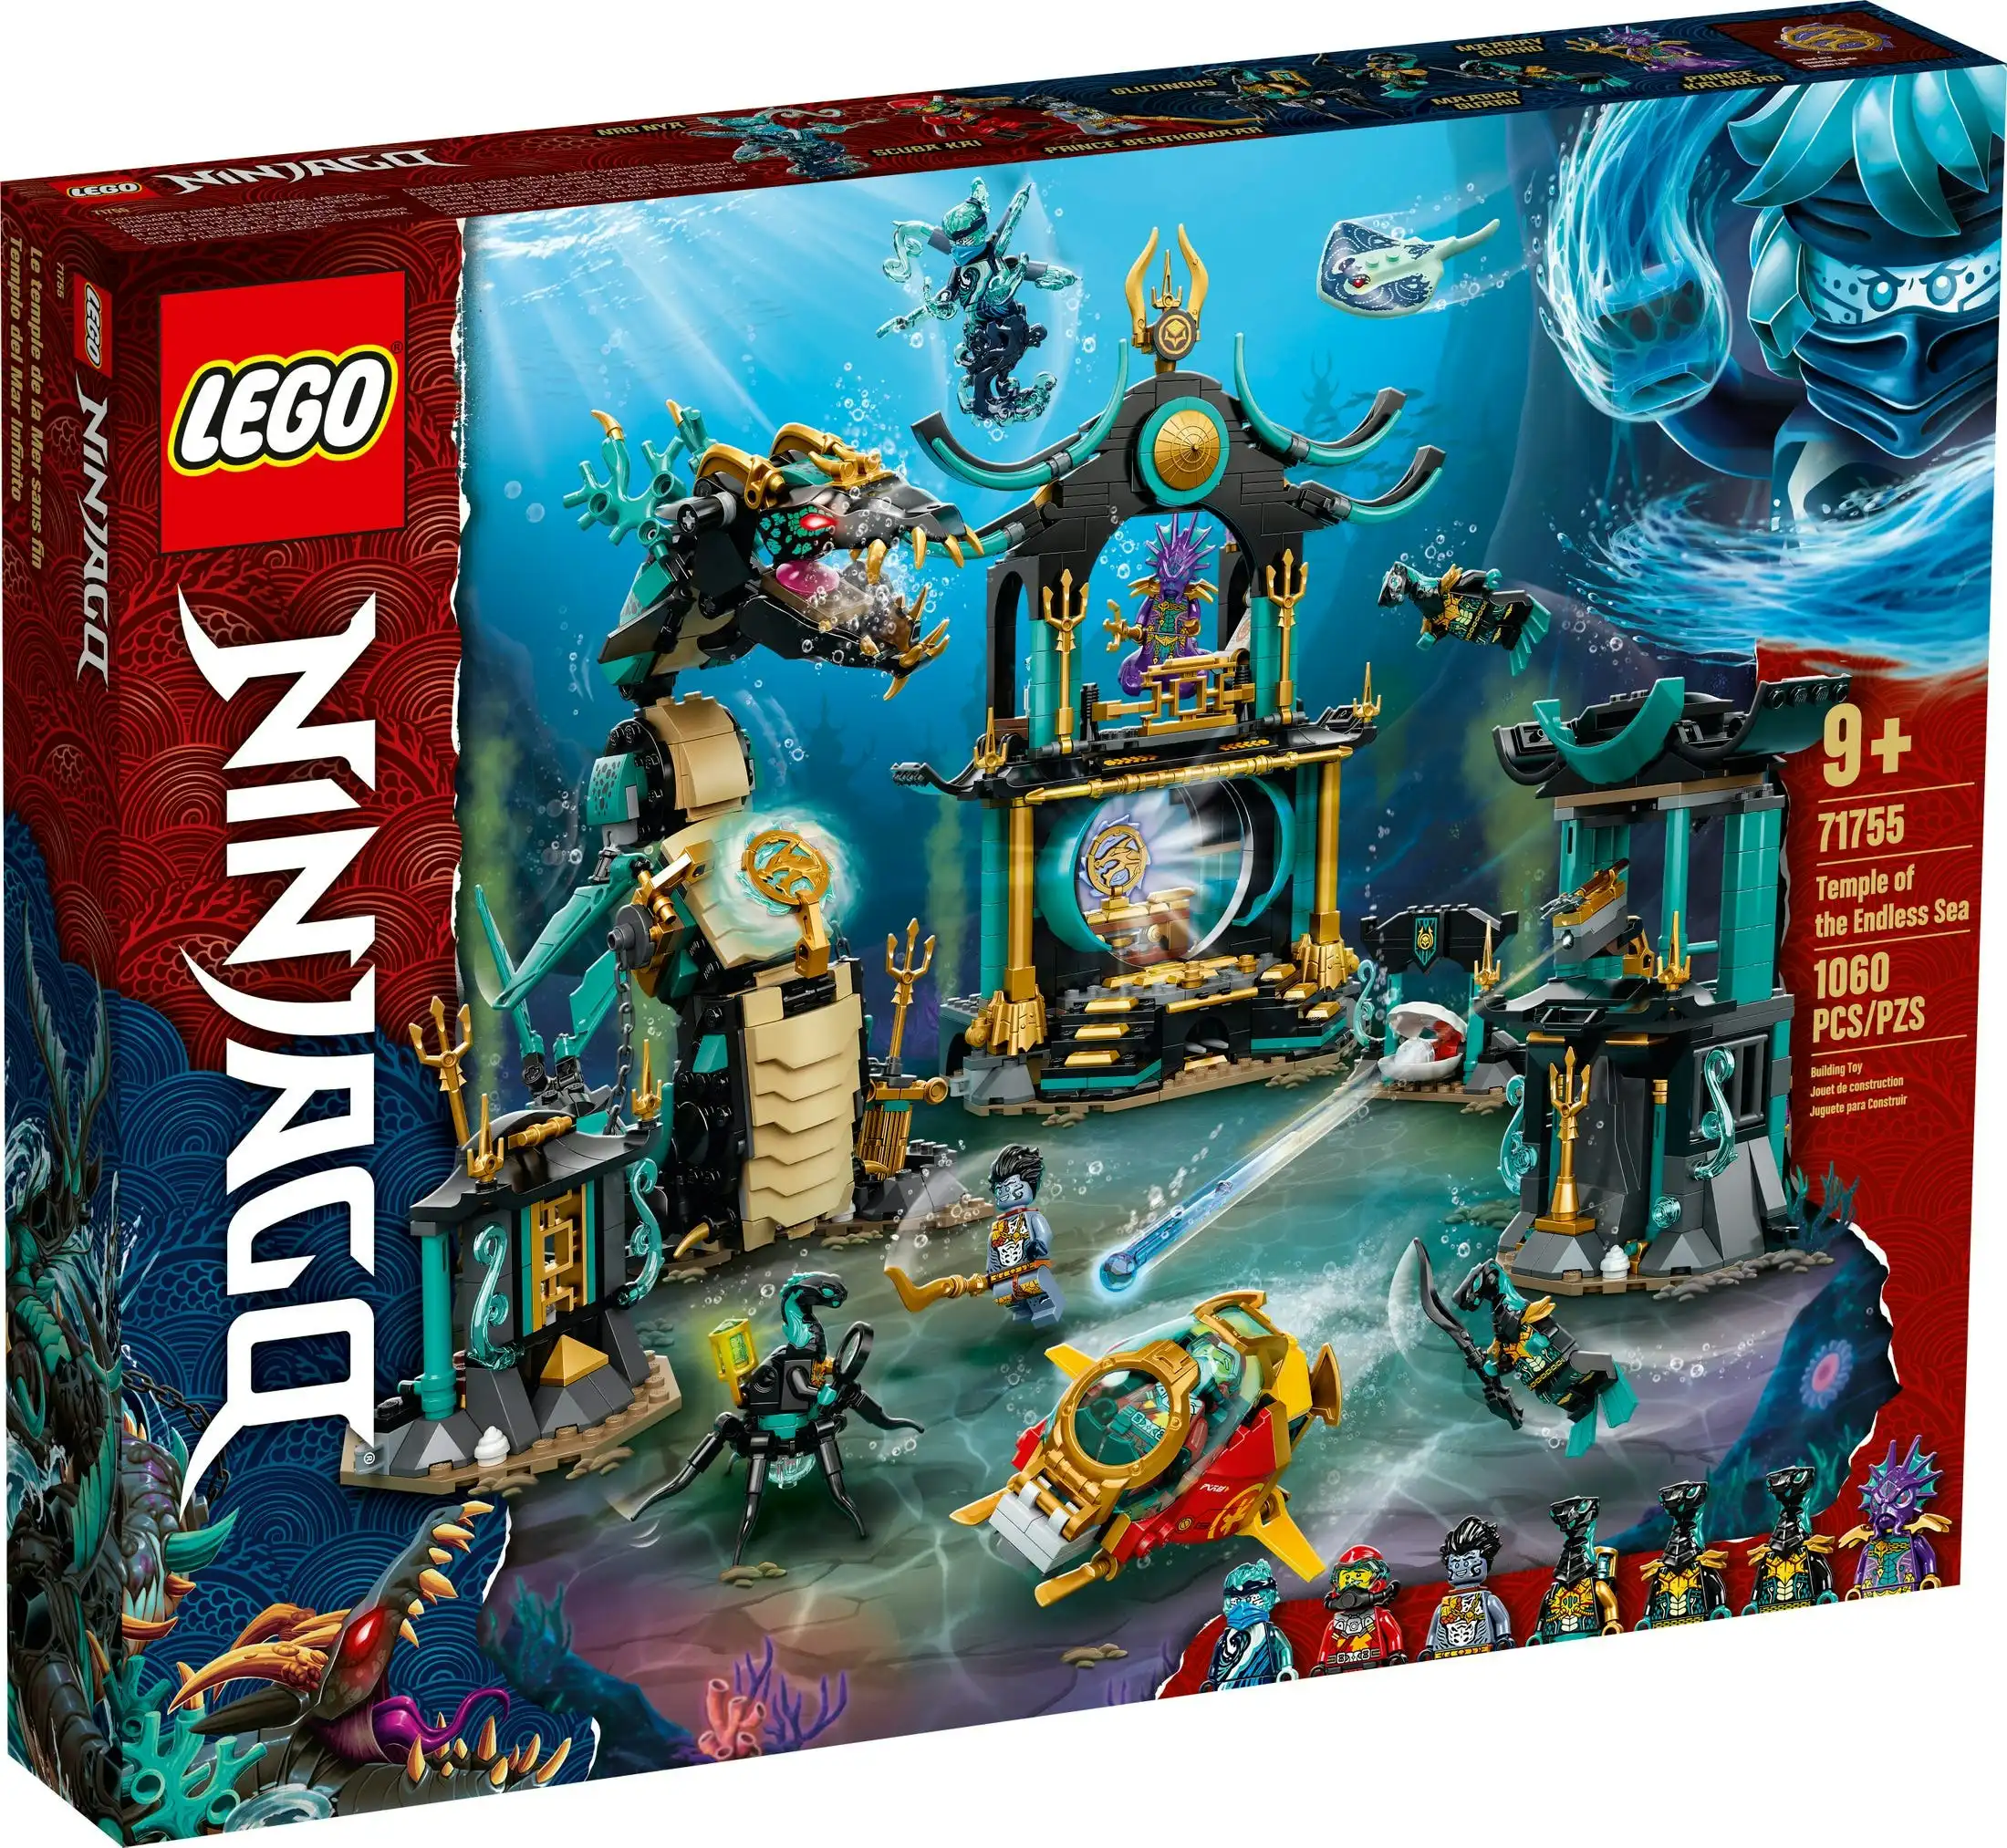 LEGO 71755 Temple of the Endless Sea - Ninjago